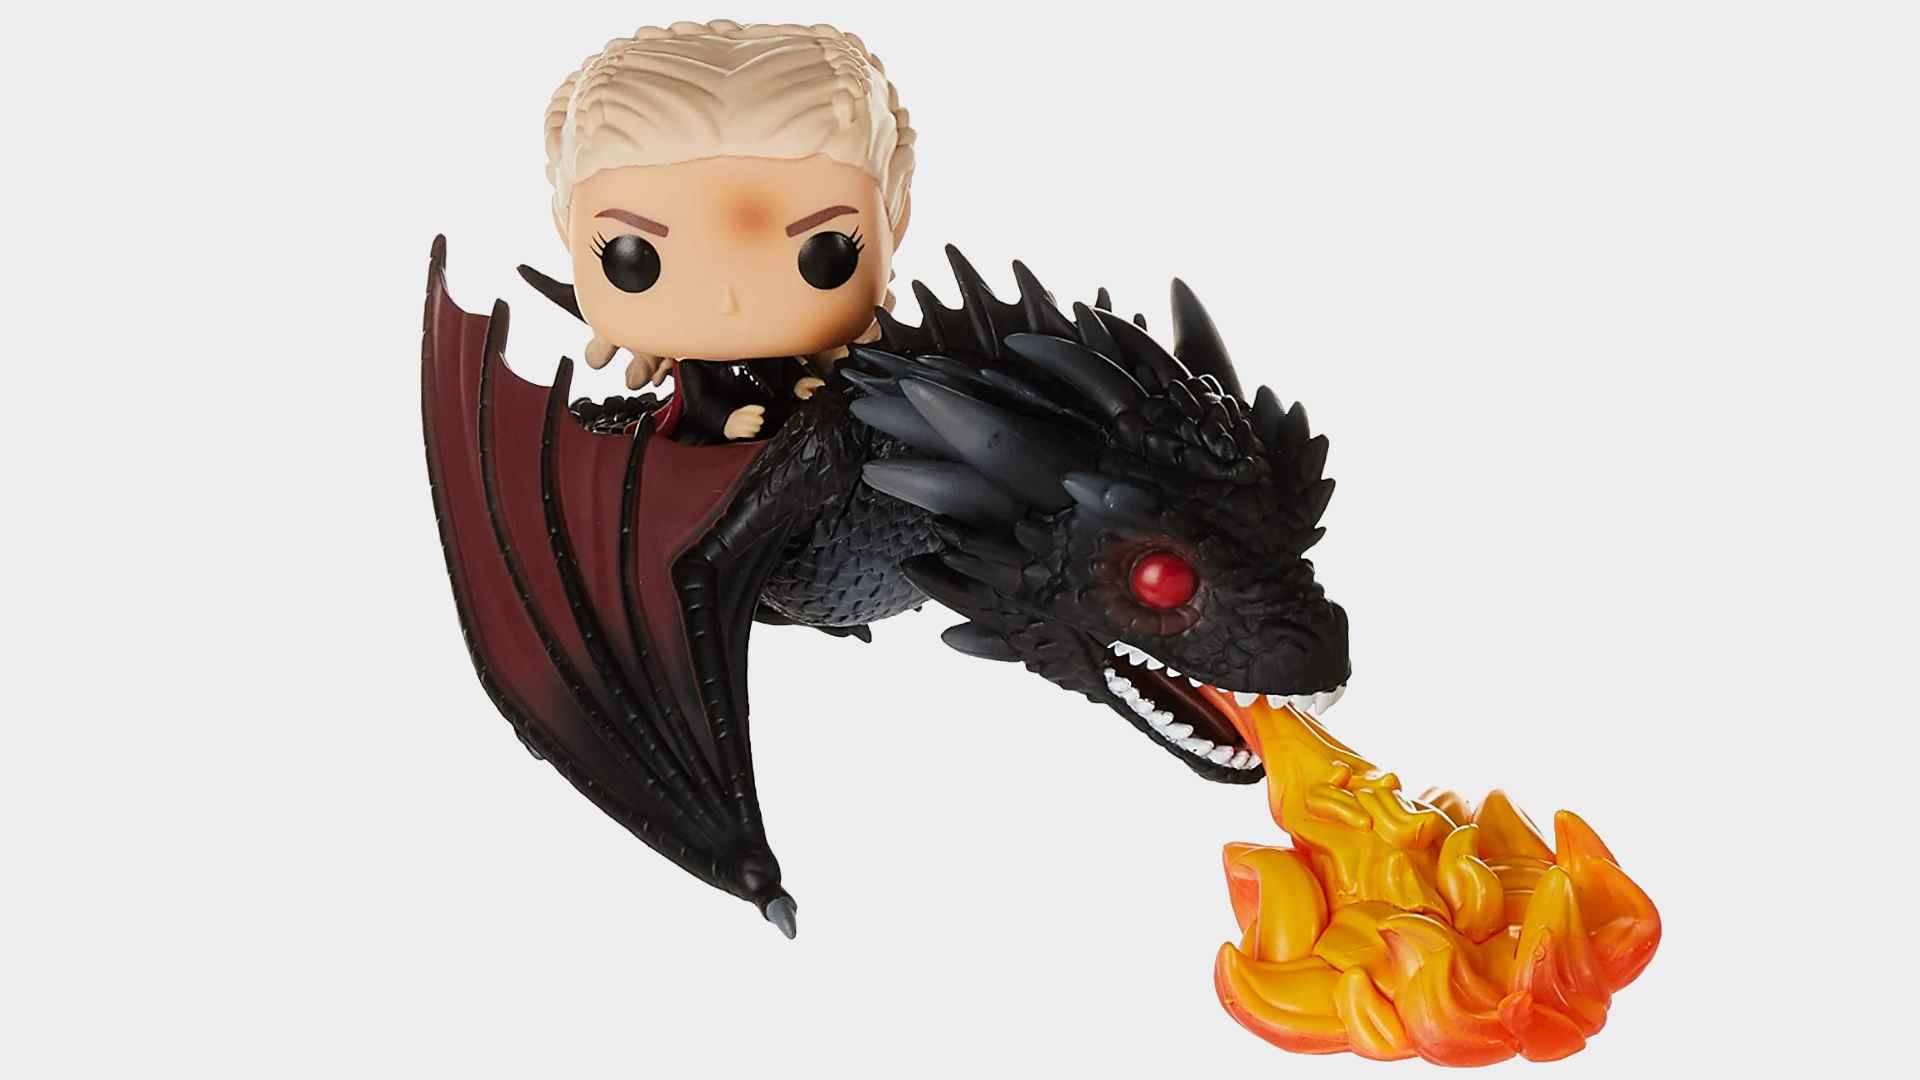 Daenerys sur le jouet Fiery Drogon sur fond gris